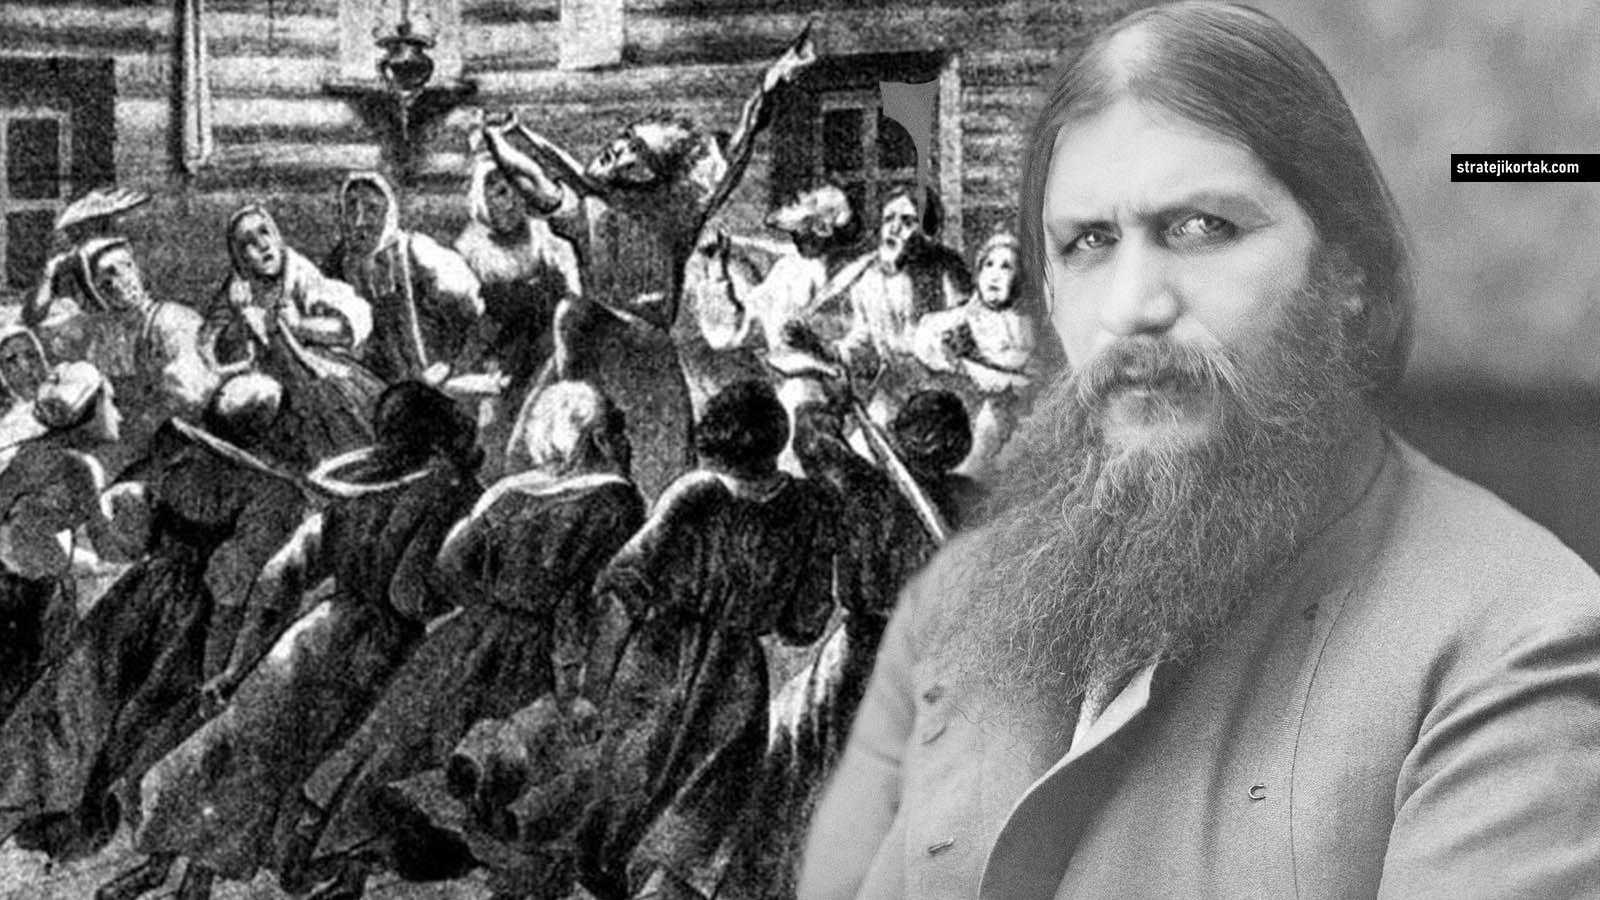 Çarlık Rusya’yı Bitiren Mektup: Grigori Rasputin - Stratejik Ortak.